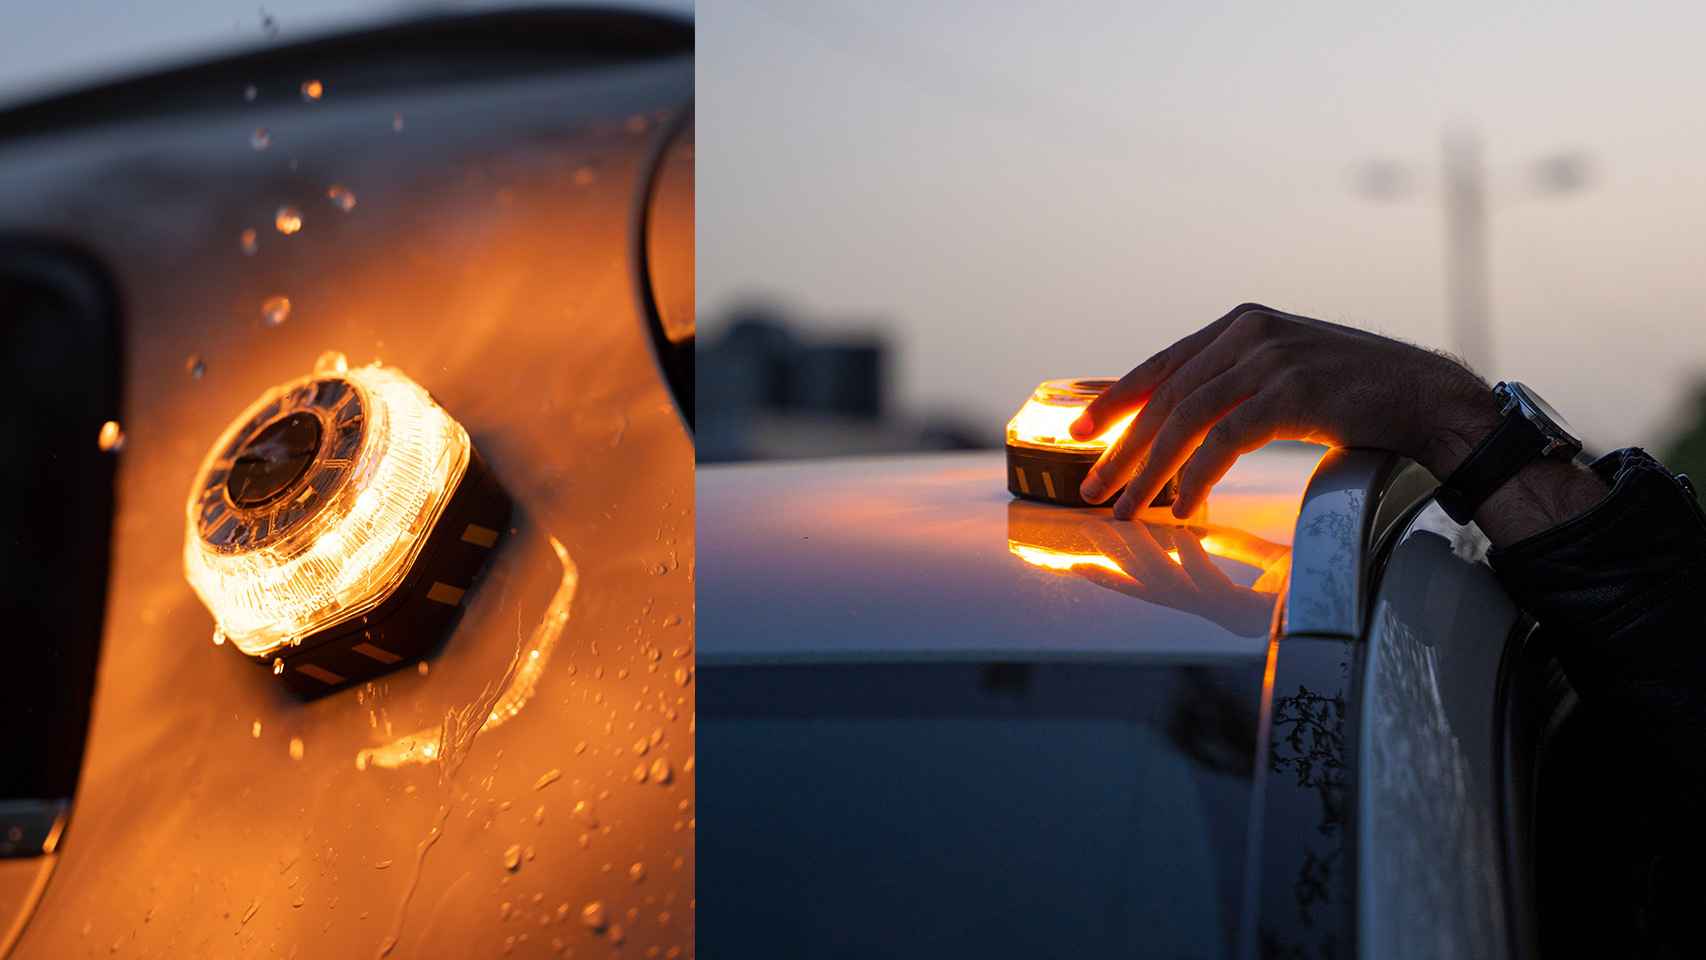 Luz emergencia v16 LED homologada DGT señalización baliza de emergencia  coche 